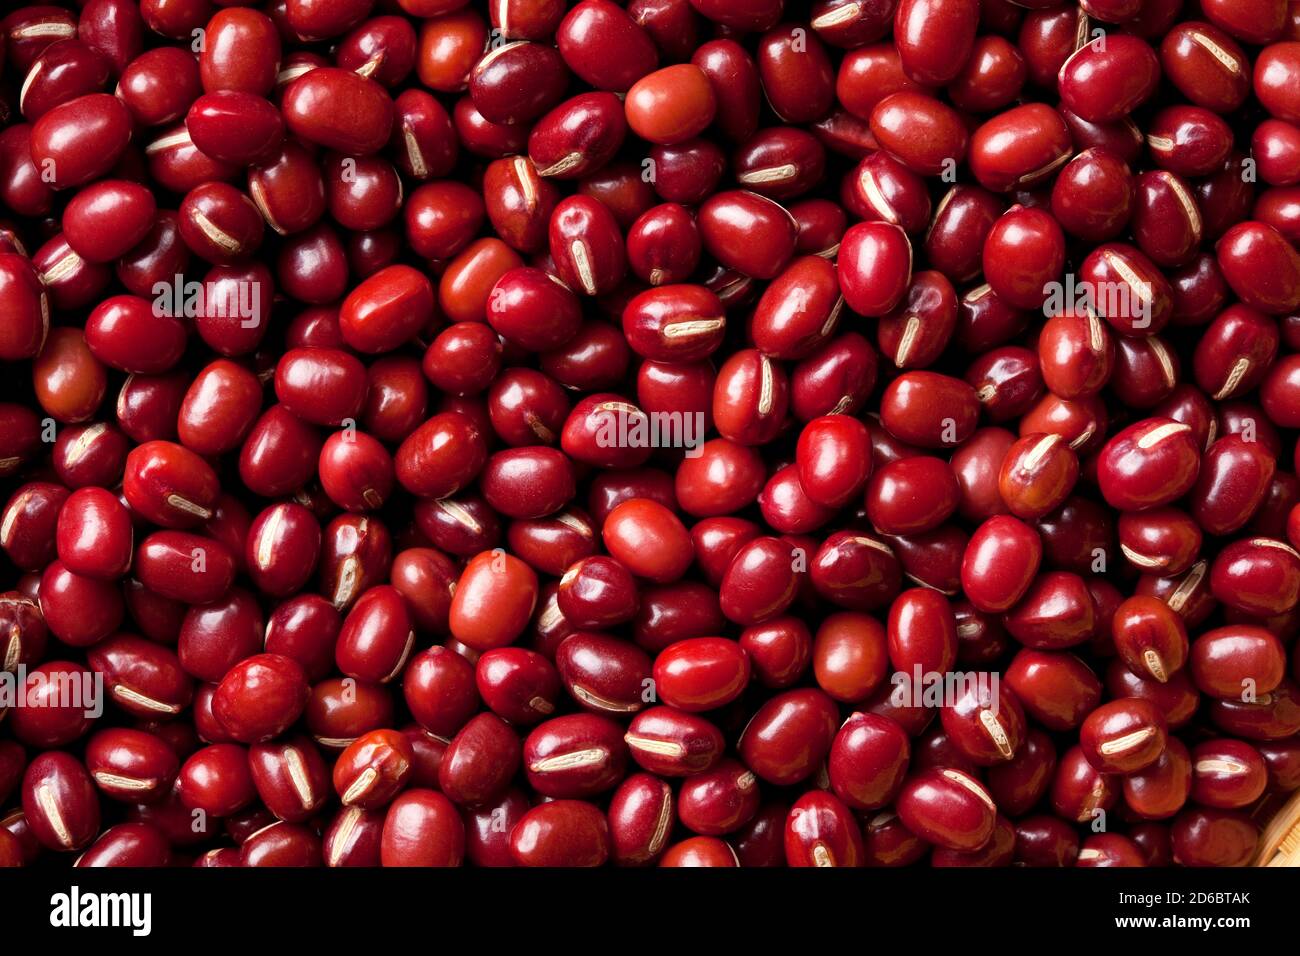 Macro view of adzuki beans Stock Photo